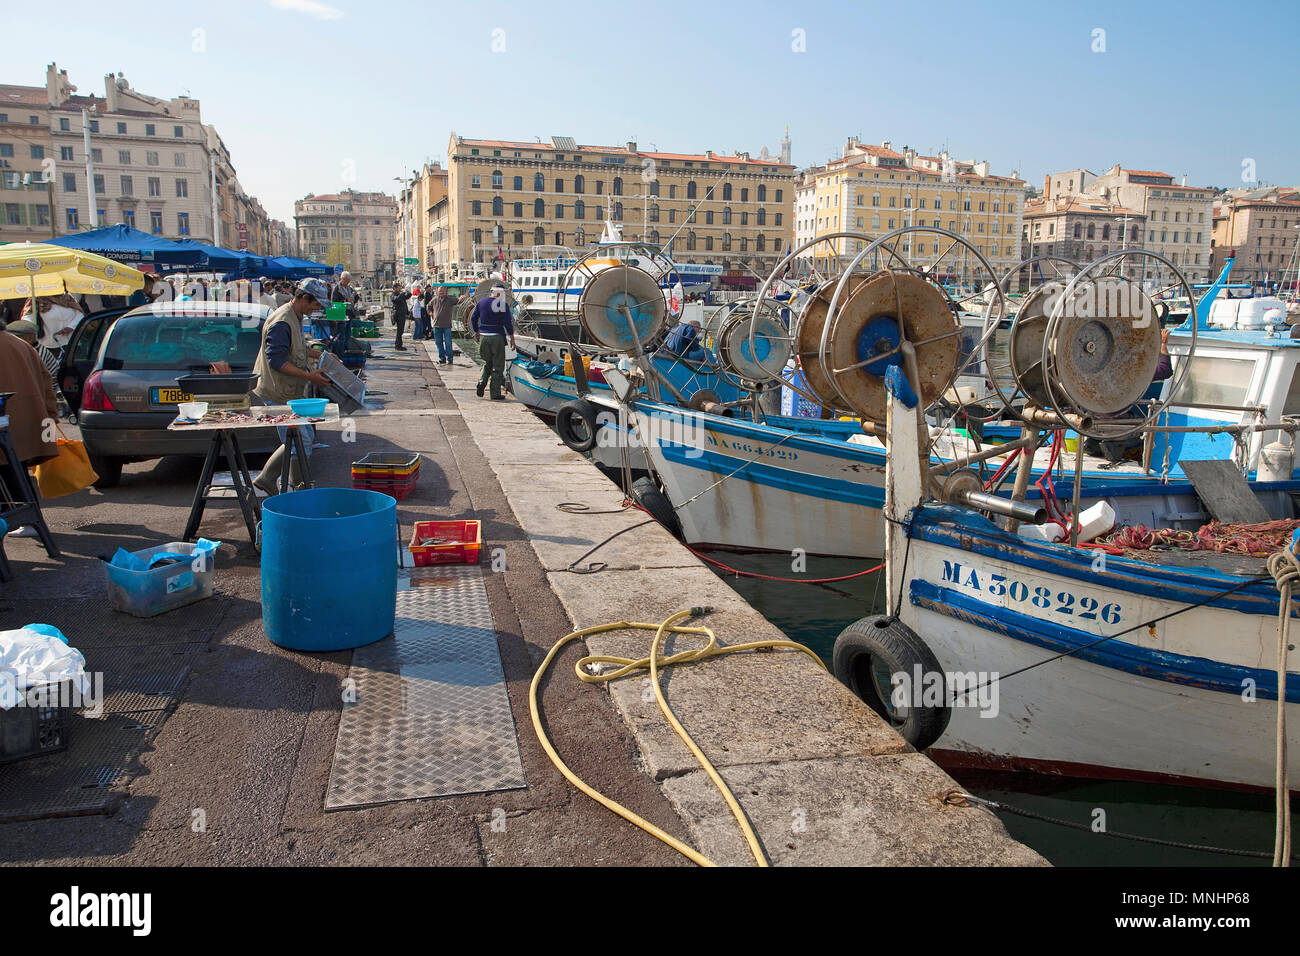 Fischmarkt am Hafen Vieux Port, Marseille, Bouches-du-Rhône der Region Provence-Alpes-Côte d'Azur, Südfrankreich, Frankreich, Europa Stockfoto